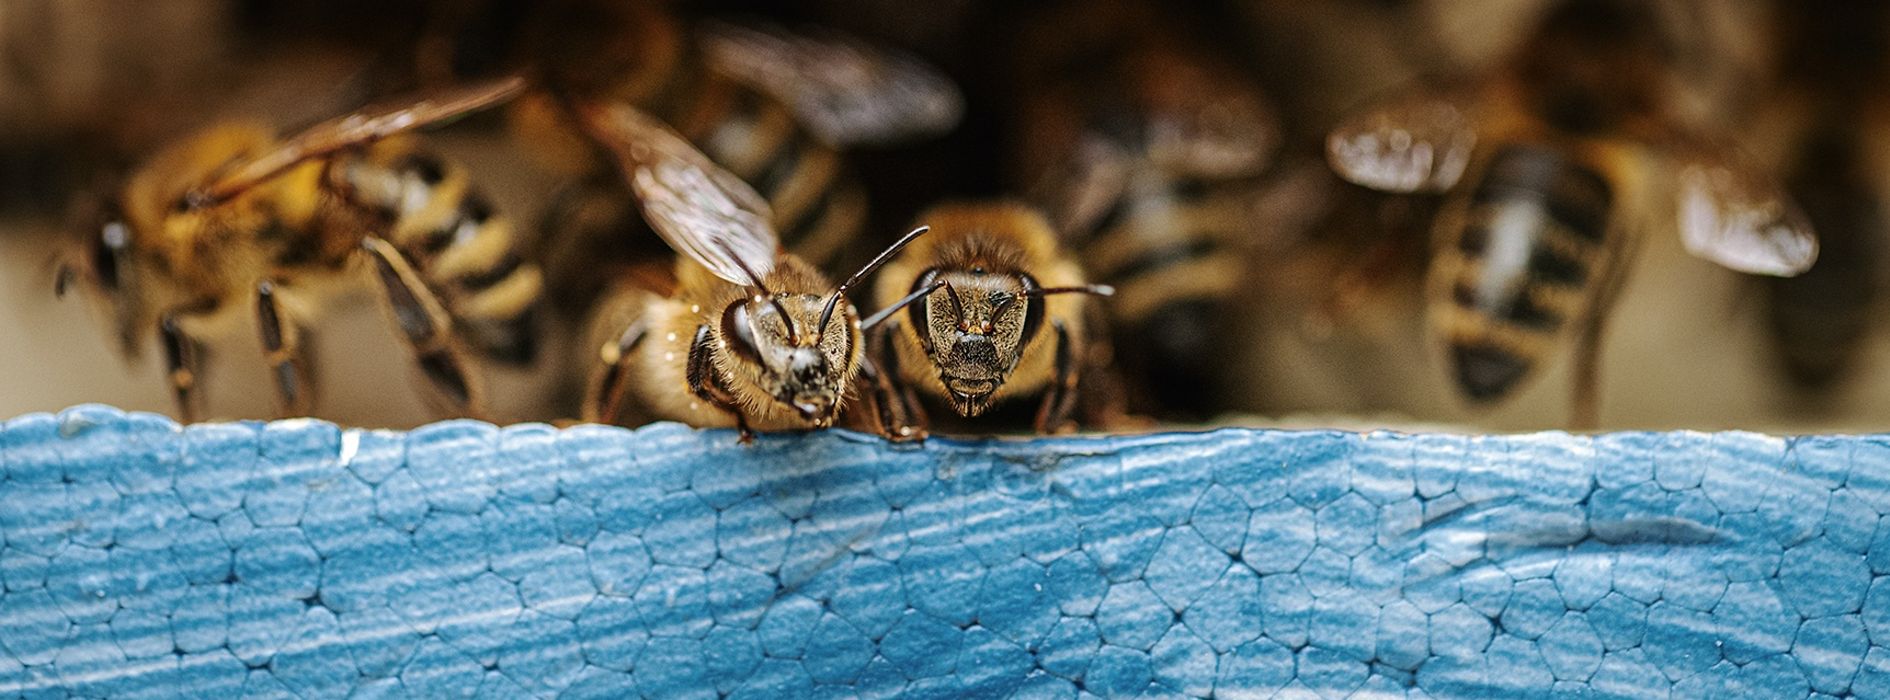 Пчелы возле летка